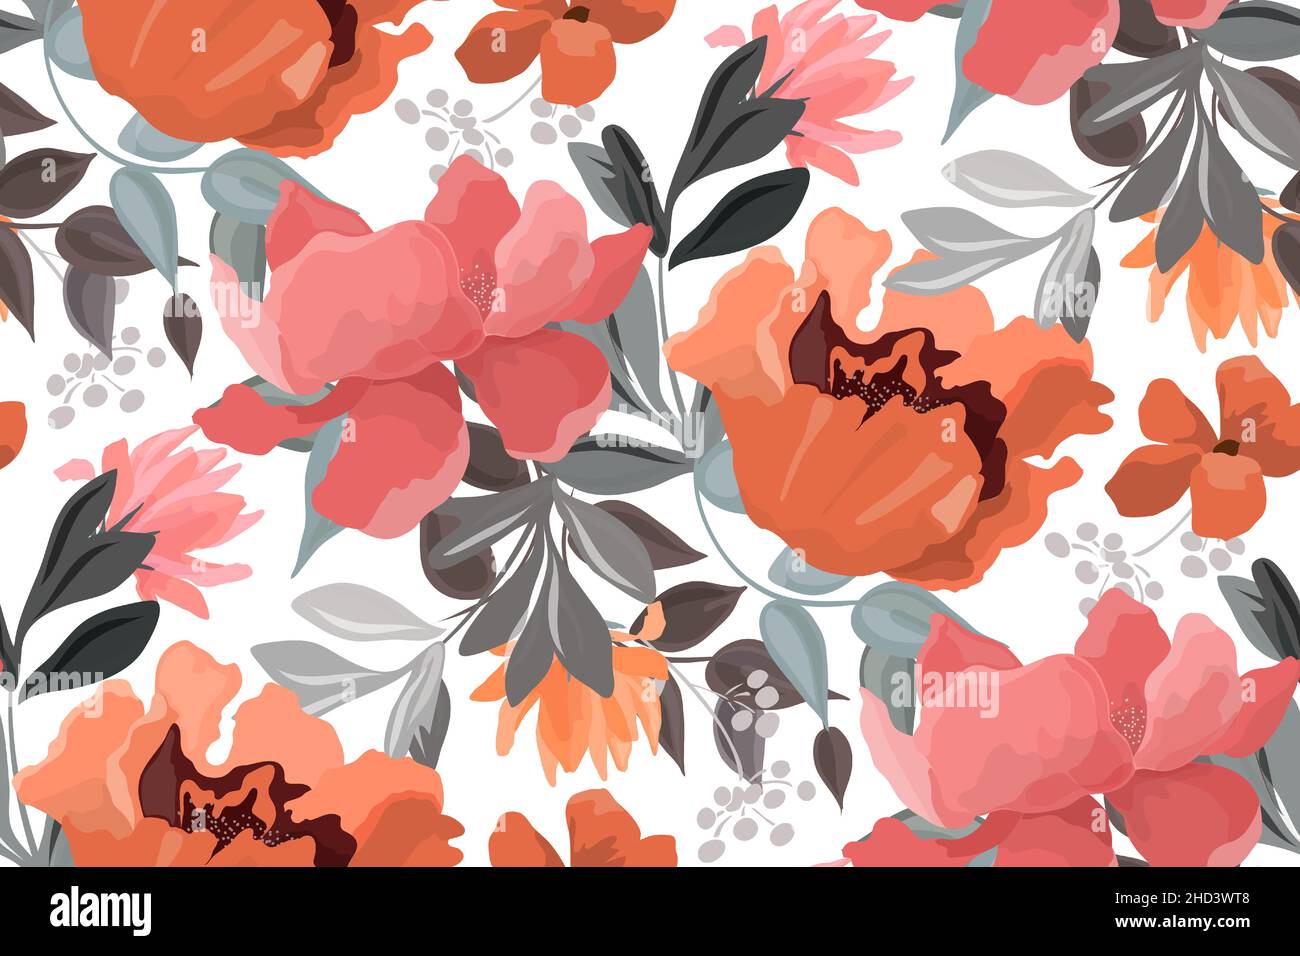 Motivo floreale vettoriale senza cuciture. Fiori rosa, rossi e arancioni, boccioli e foglie grigie su sfondo bianco. Illustrazione Vettoriale